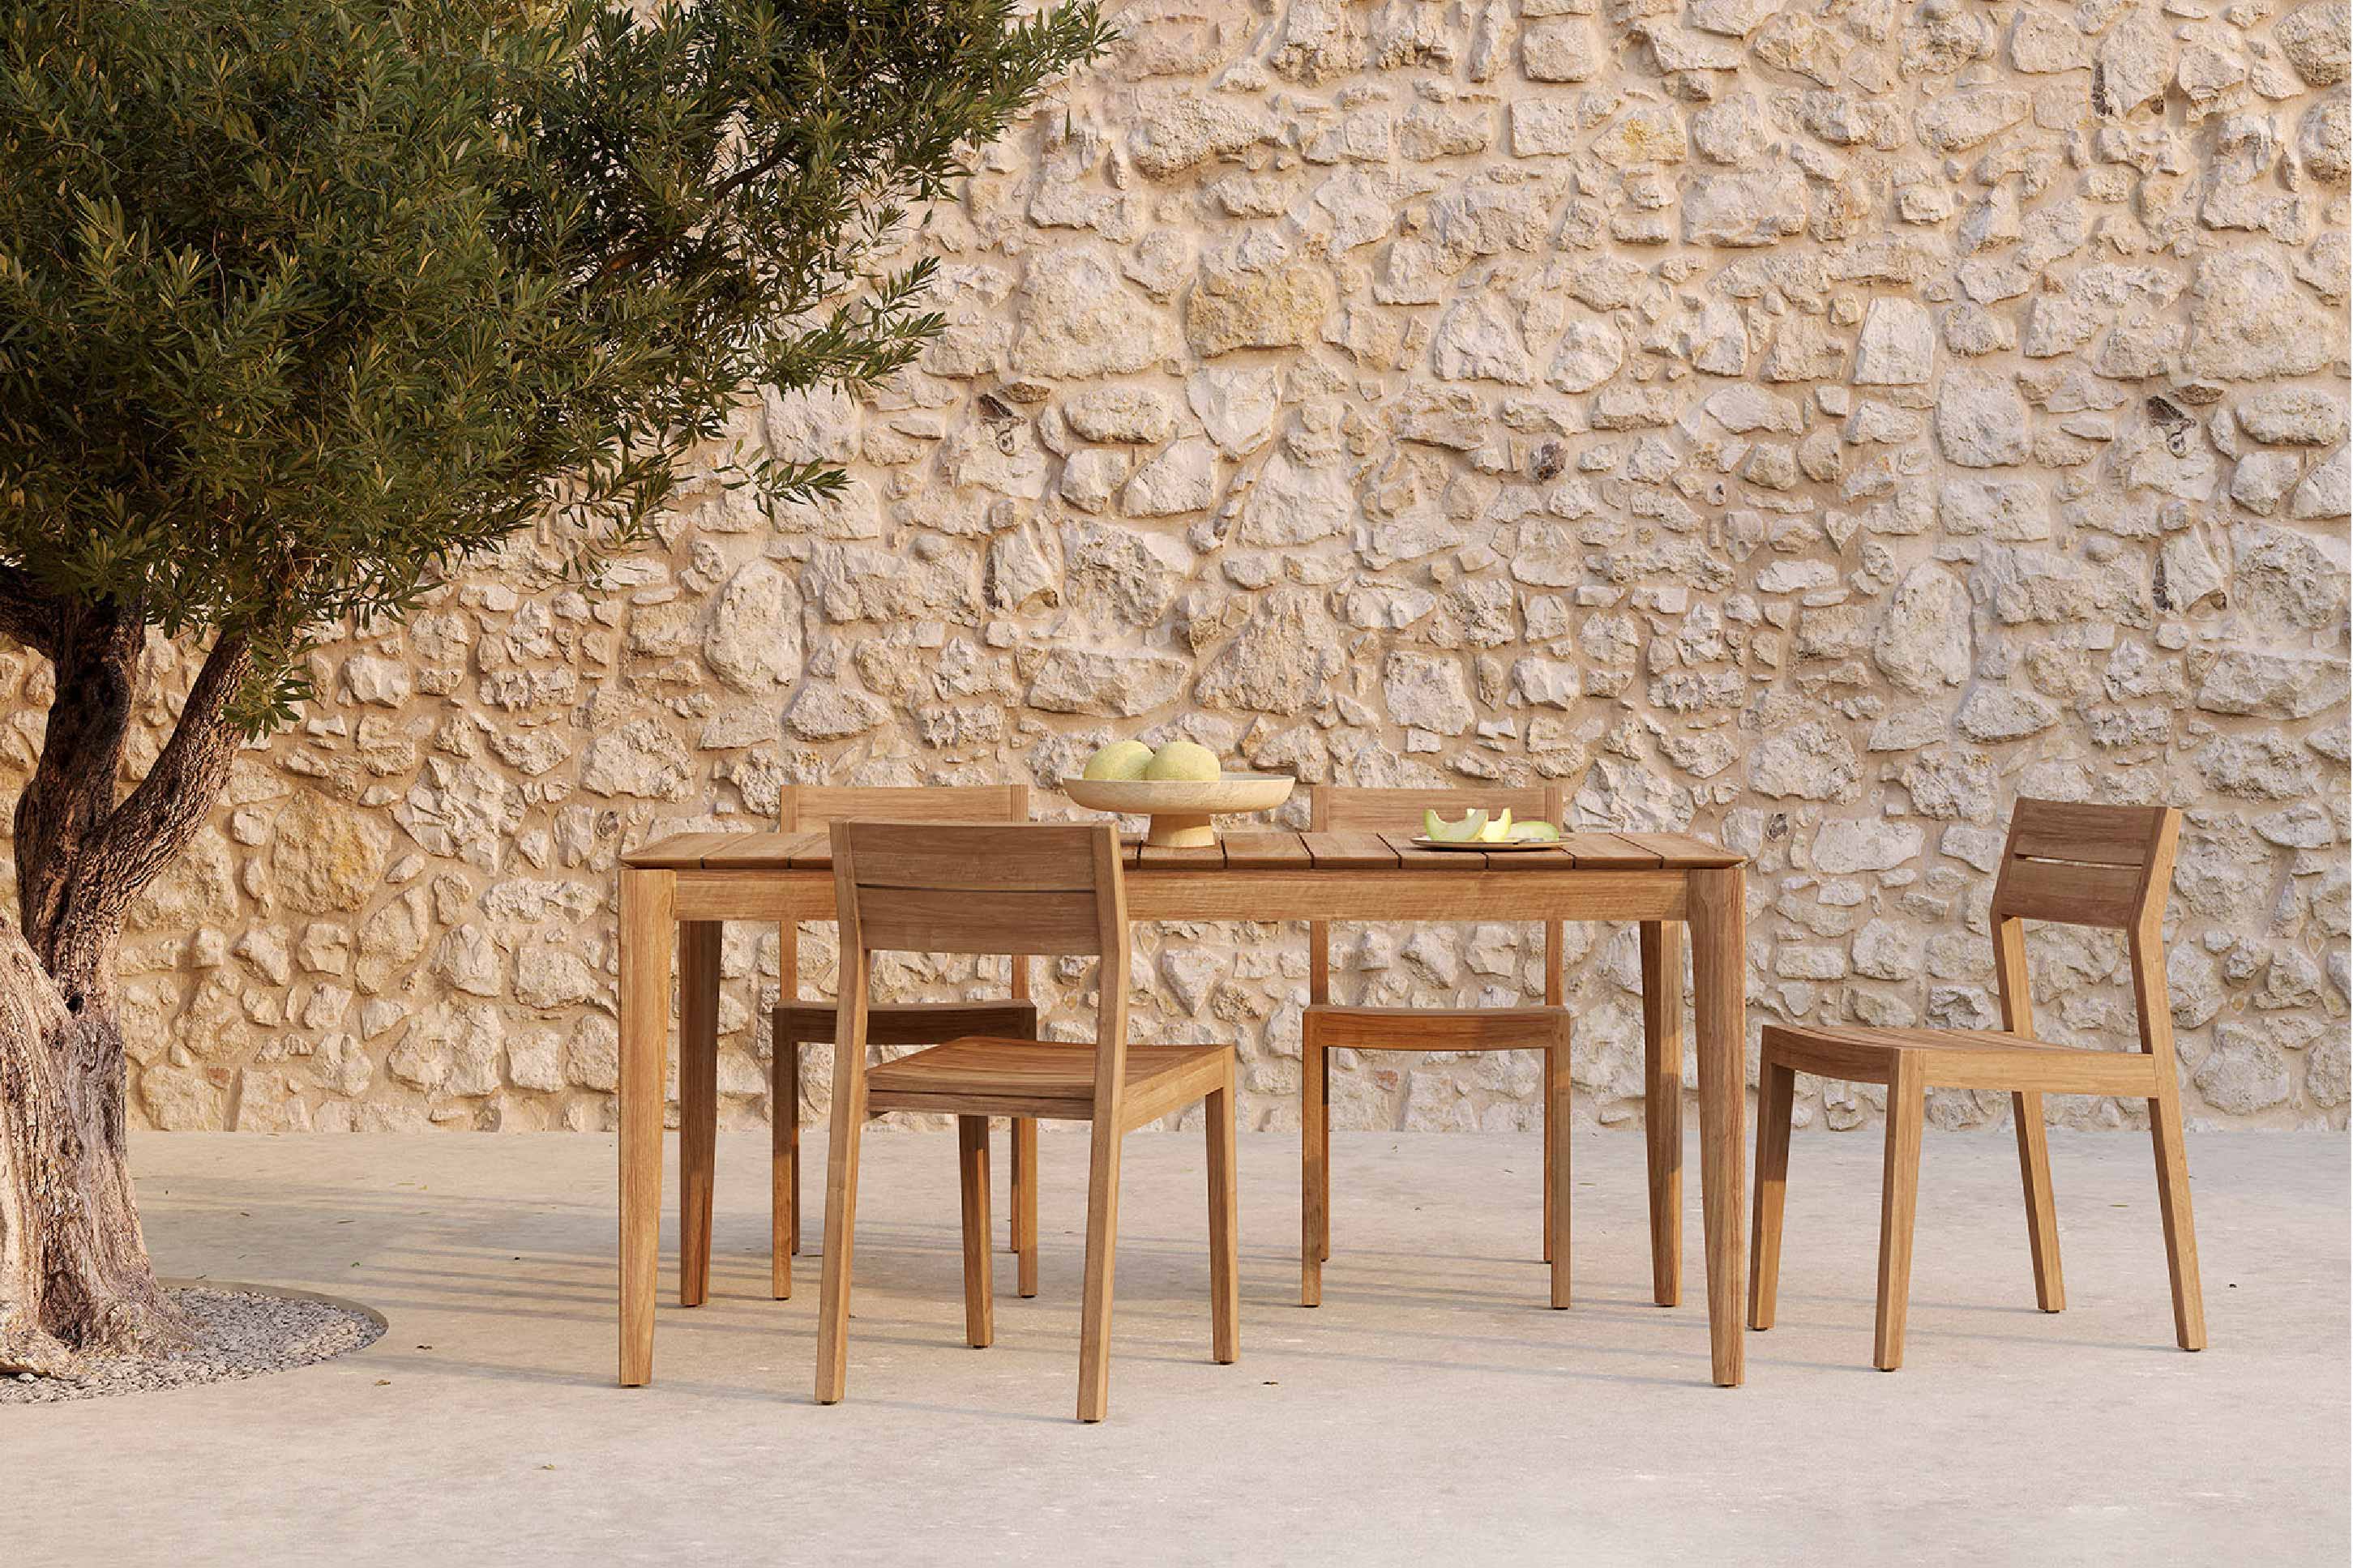 比利時原裝進口實木傢俬 - 戶外系列 - Bok系列柚木餐桌